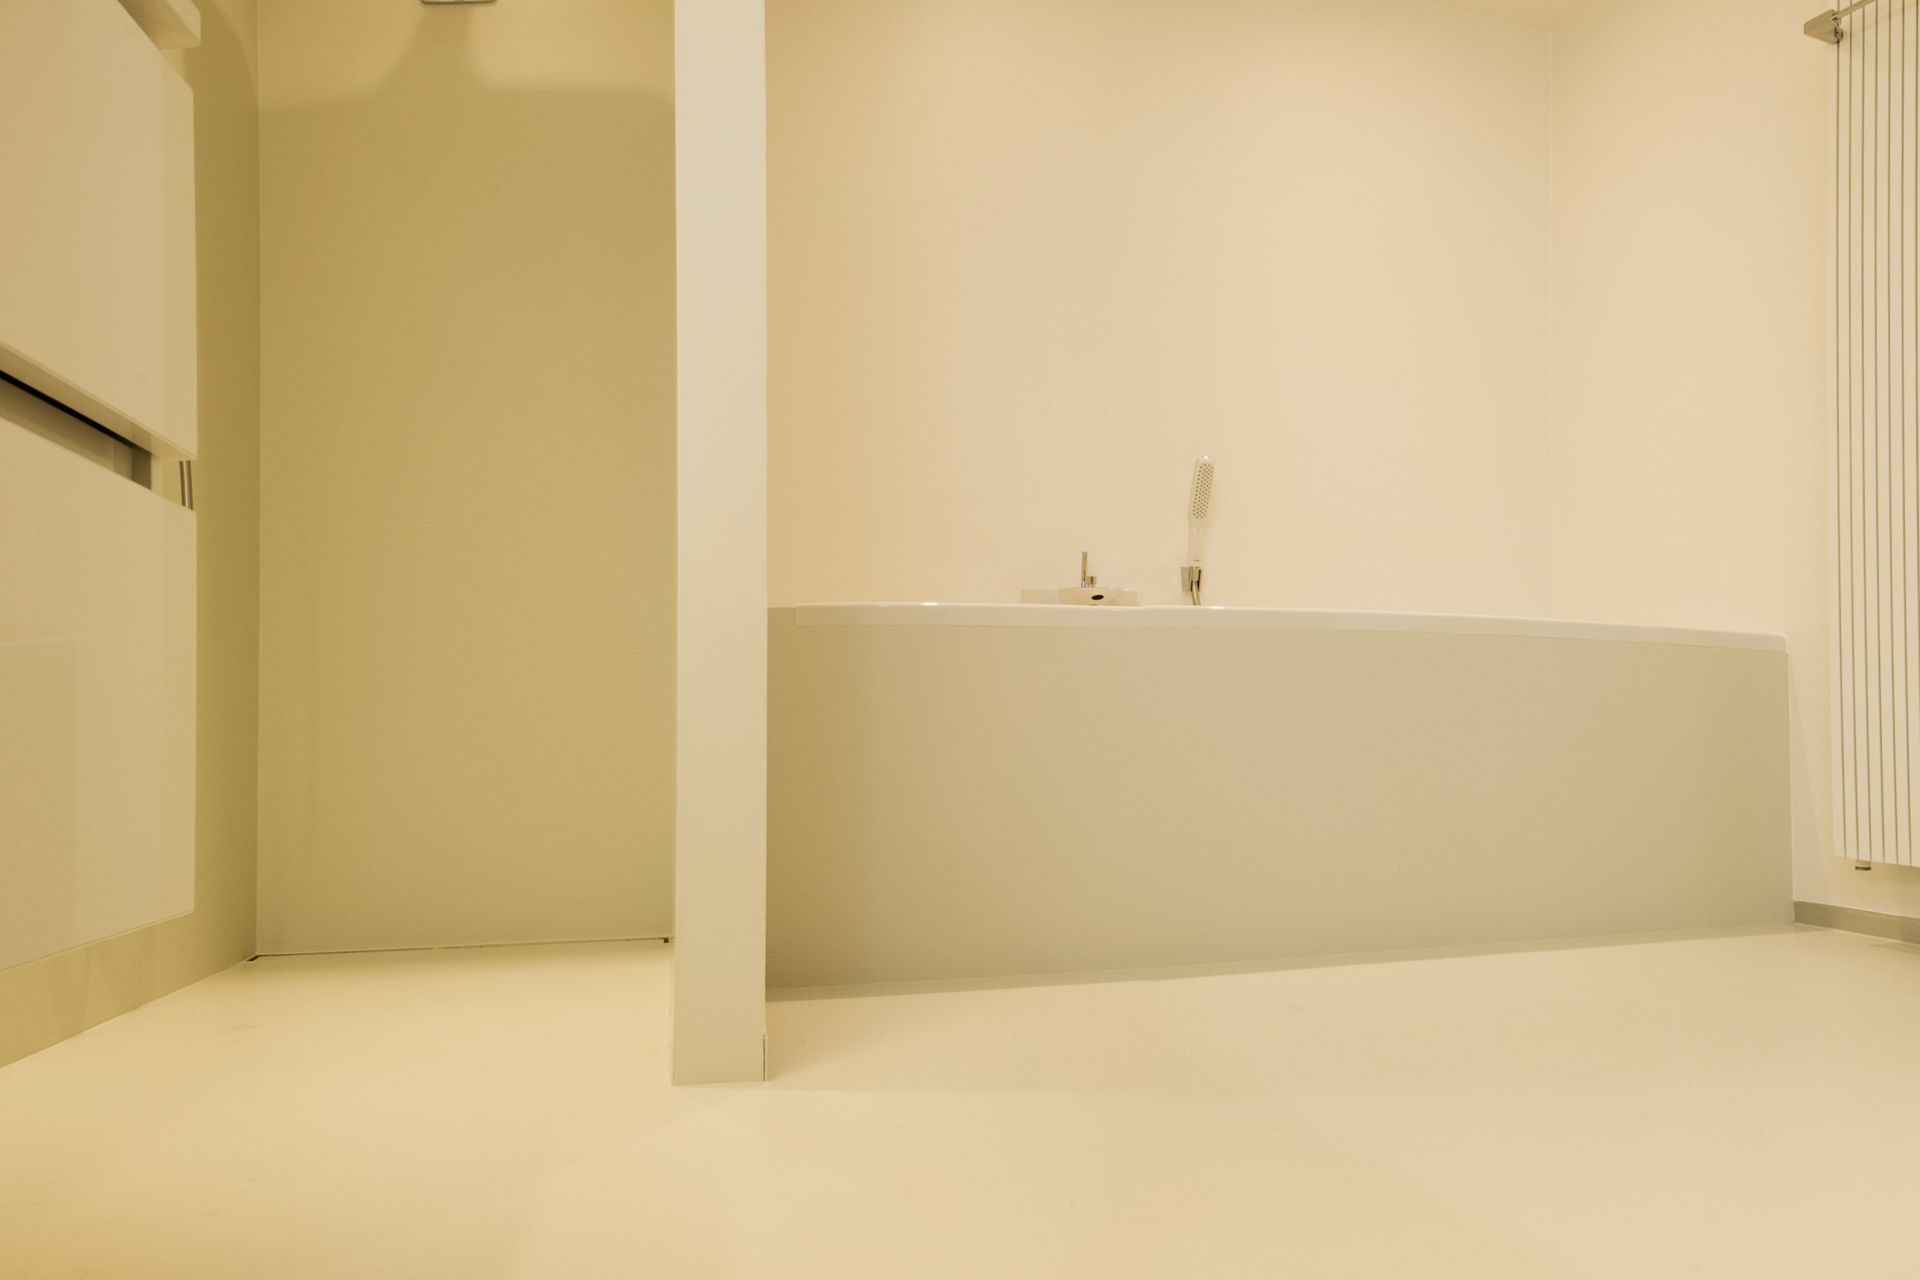 Sika ComfortFloor® beige floor in modern bathroom shower bathtub